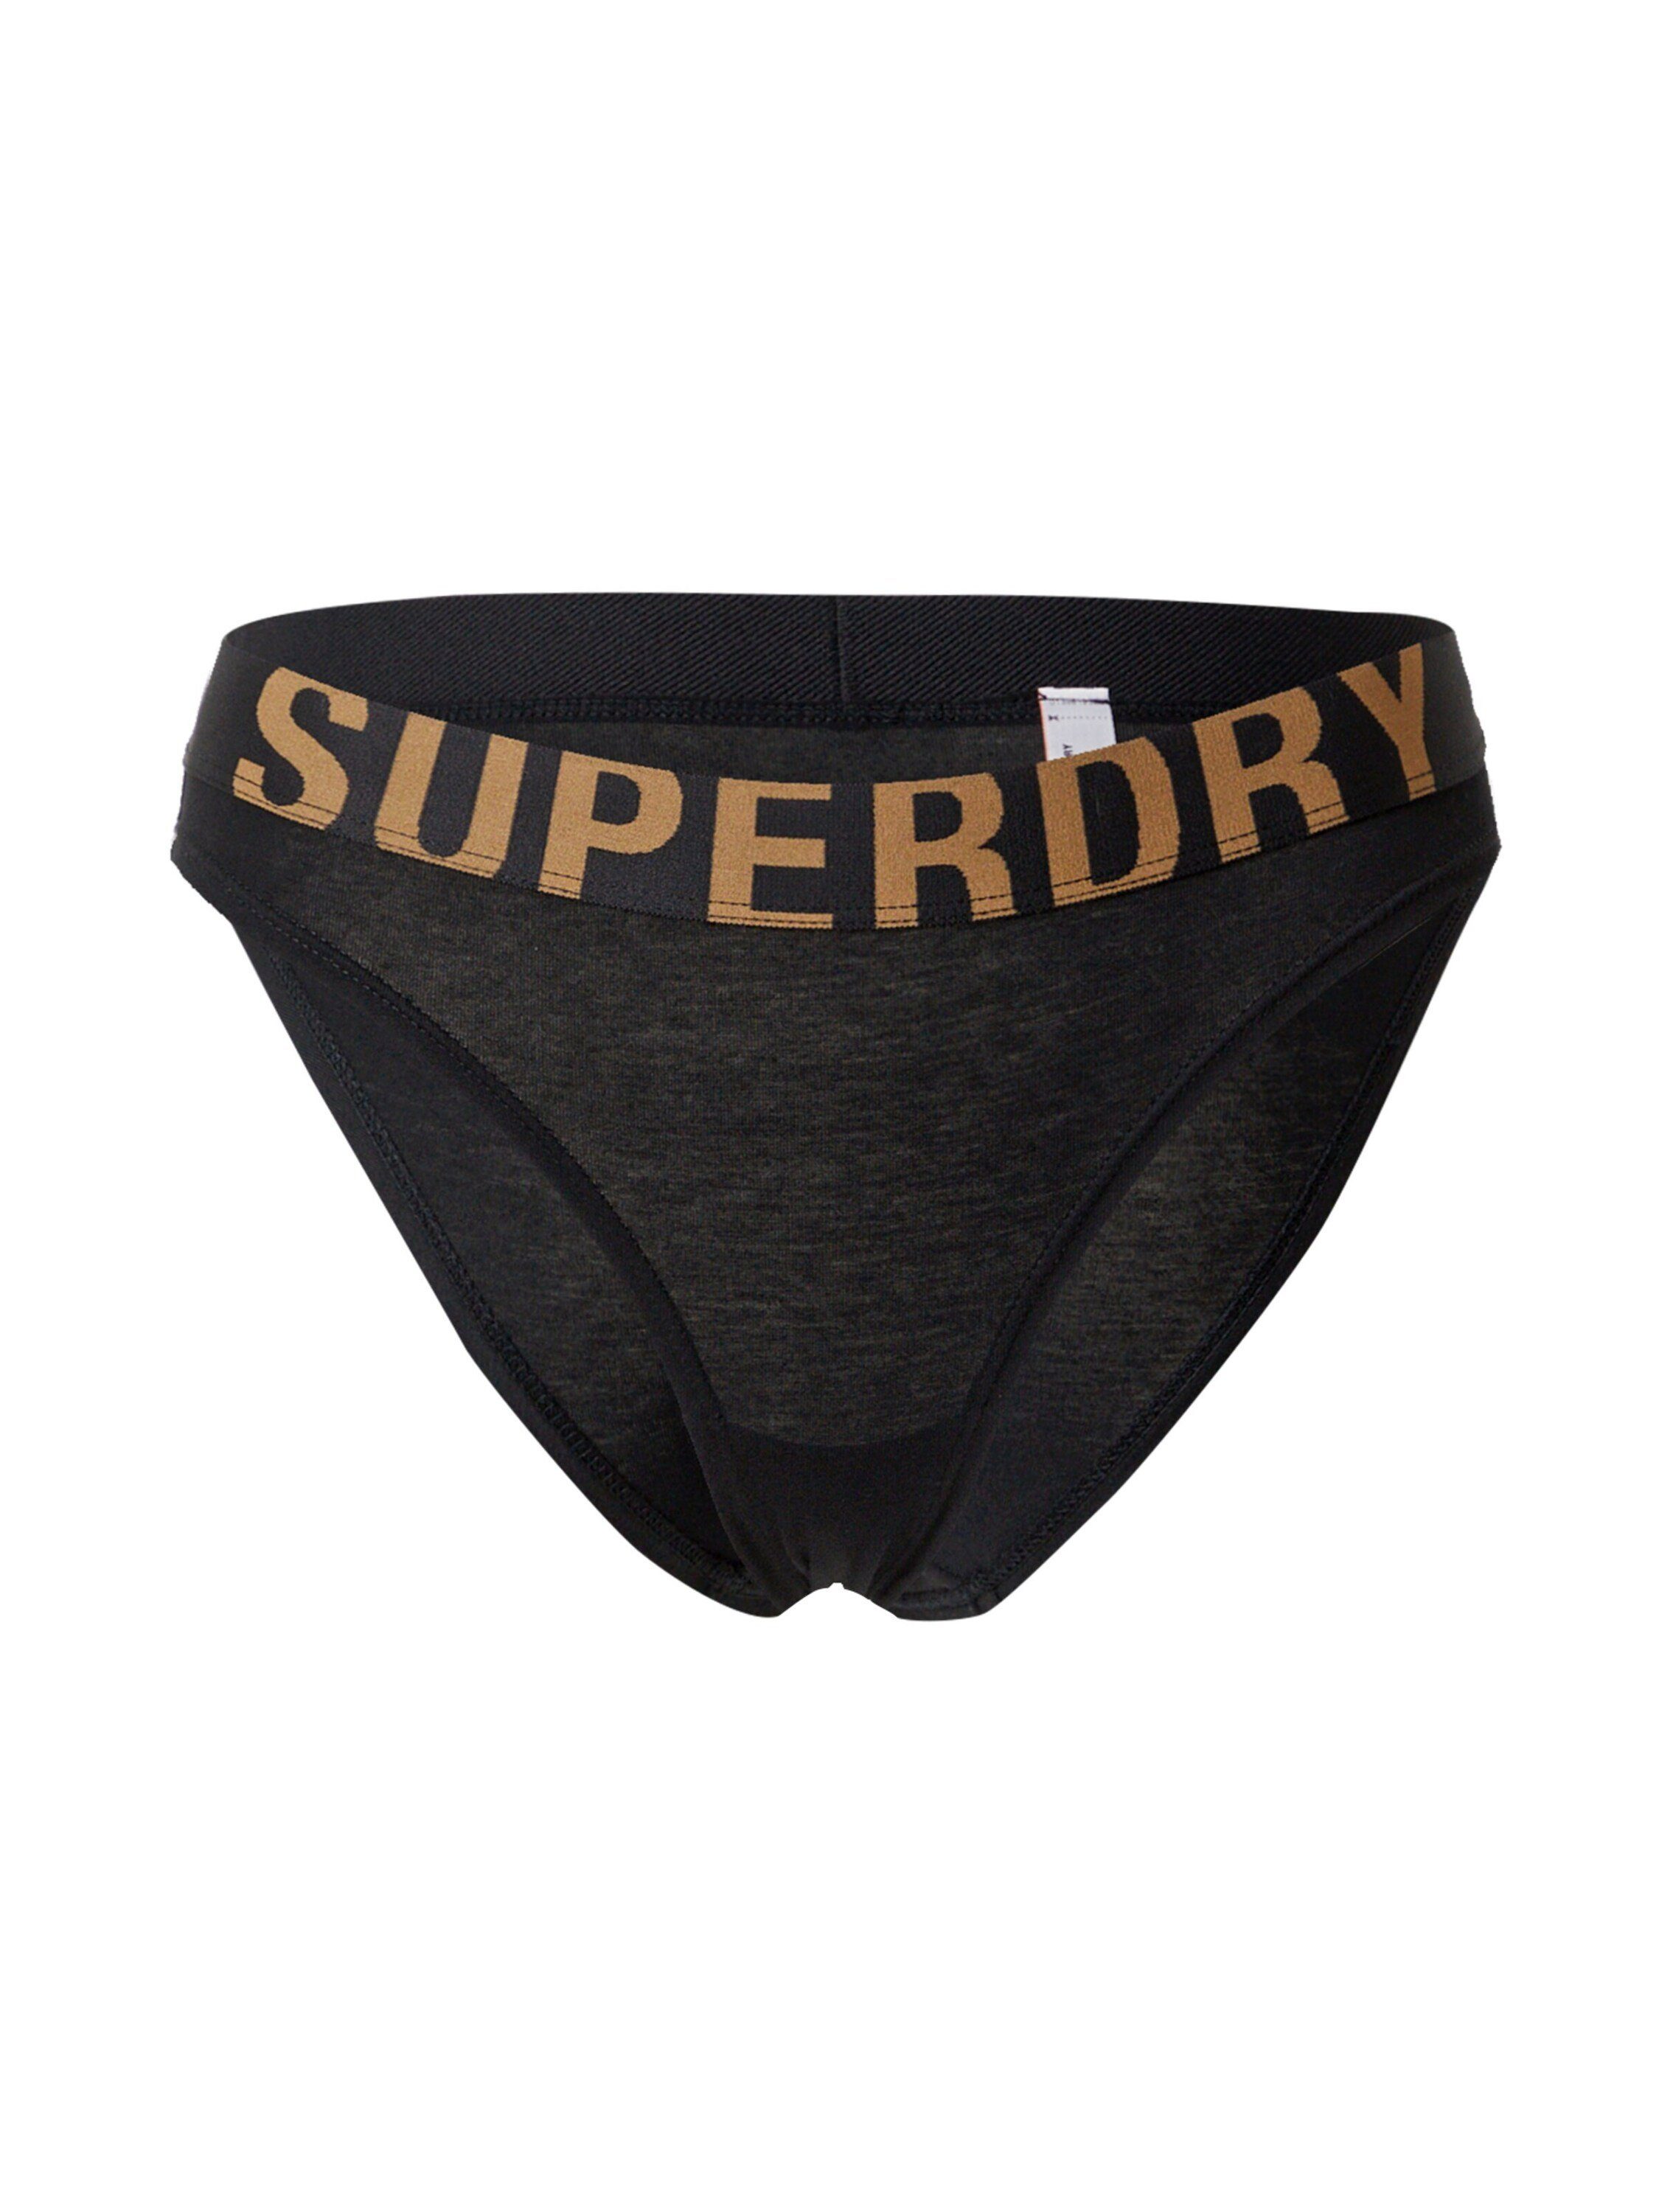 Superdry Bikini-Hose 1 Stück online kaufen | OTTO